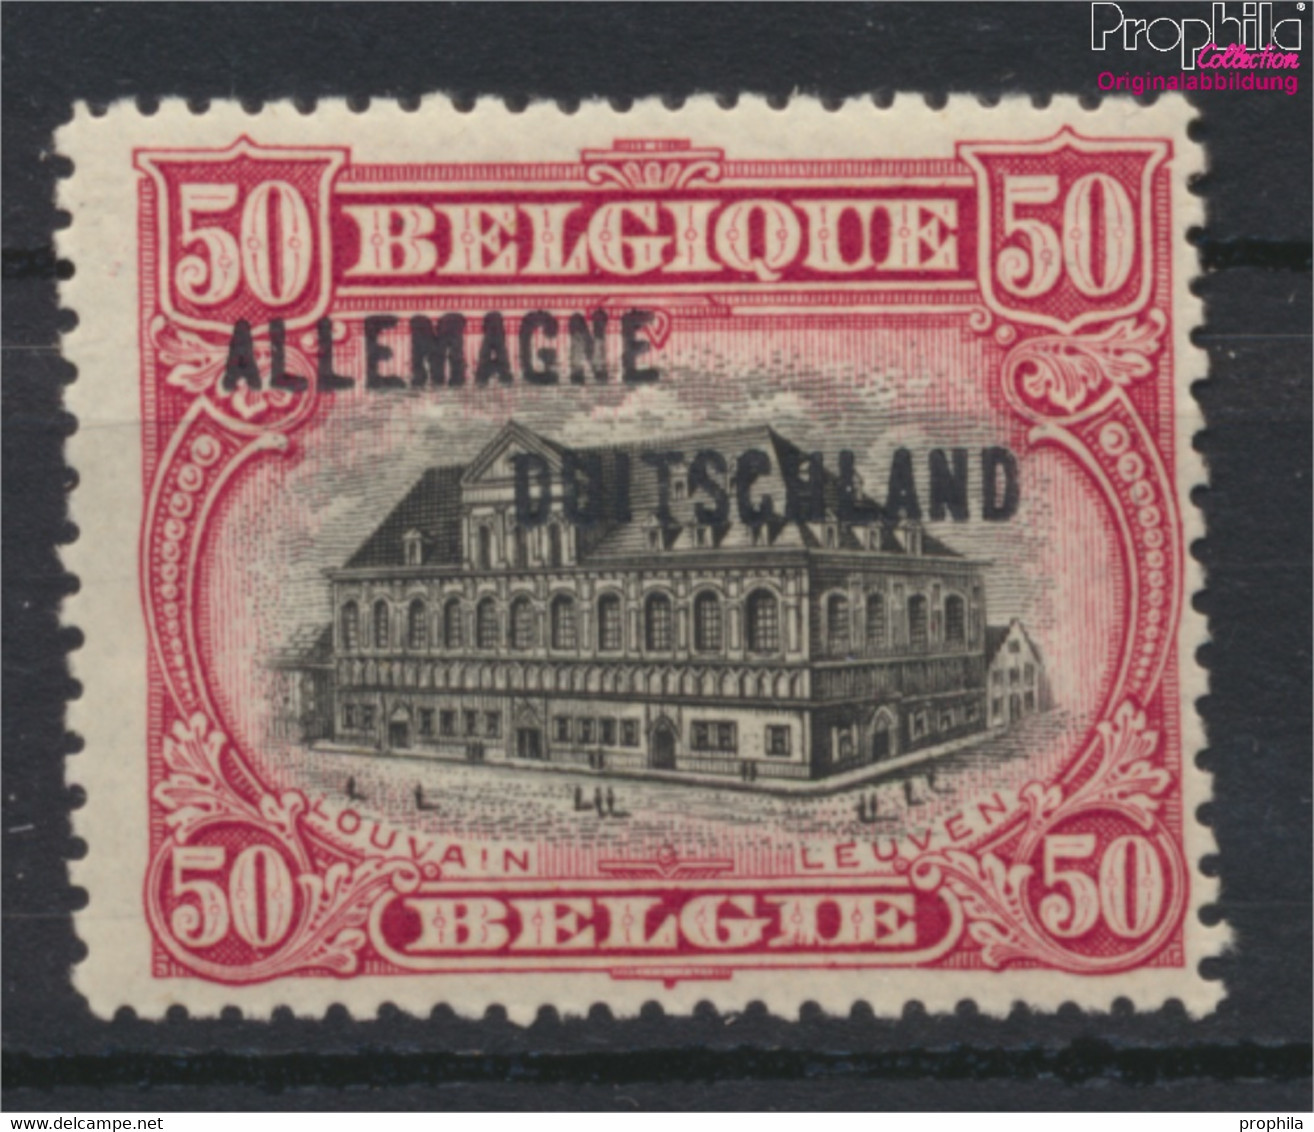 Belgische Post Rheinland 10A Mit Falz 1919 Albert I. (9910577 - Deutsche Besatzung